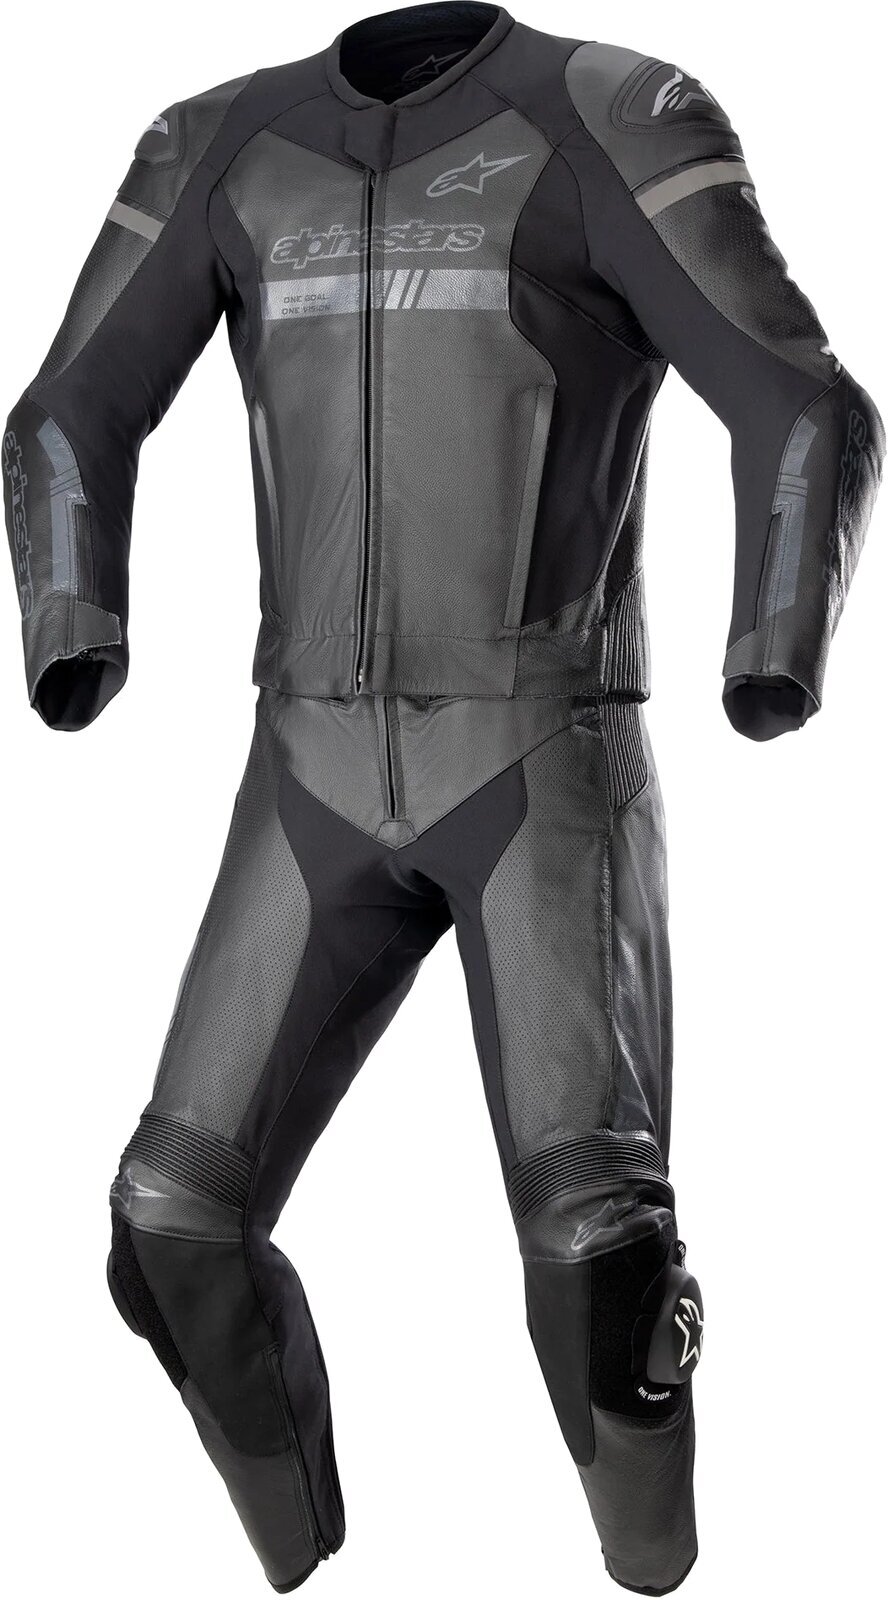 Todelt motorcykeldragt Alpinestars GP Force Chaser Leather Suit 2 Pc Black/Black 56 Todelt motorcykeldragt